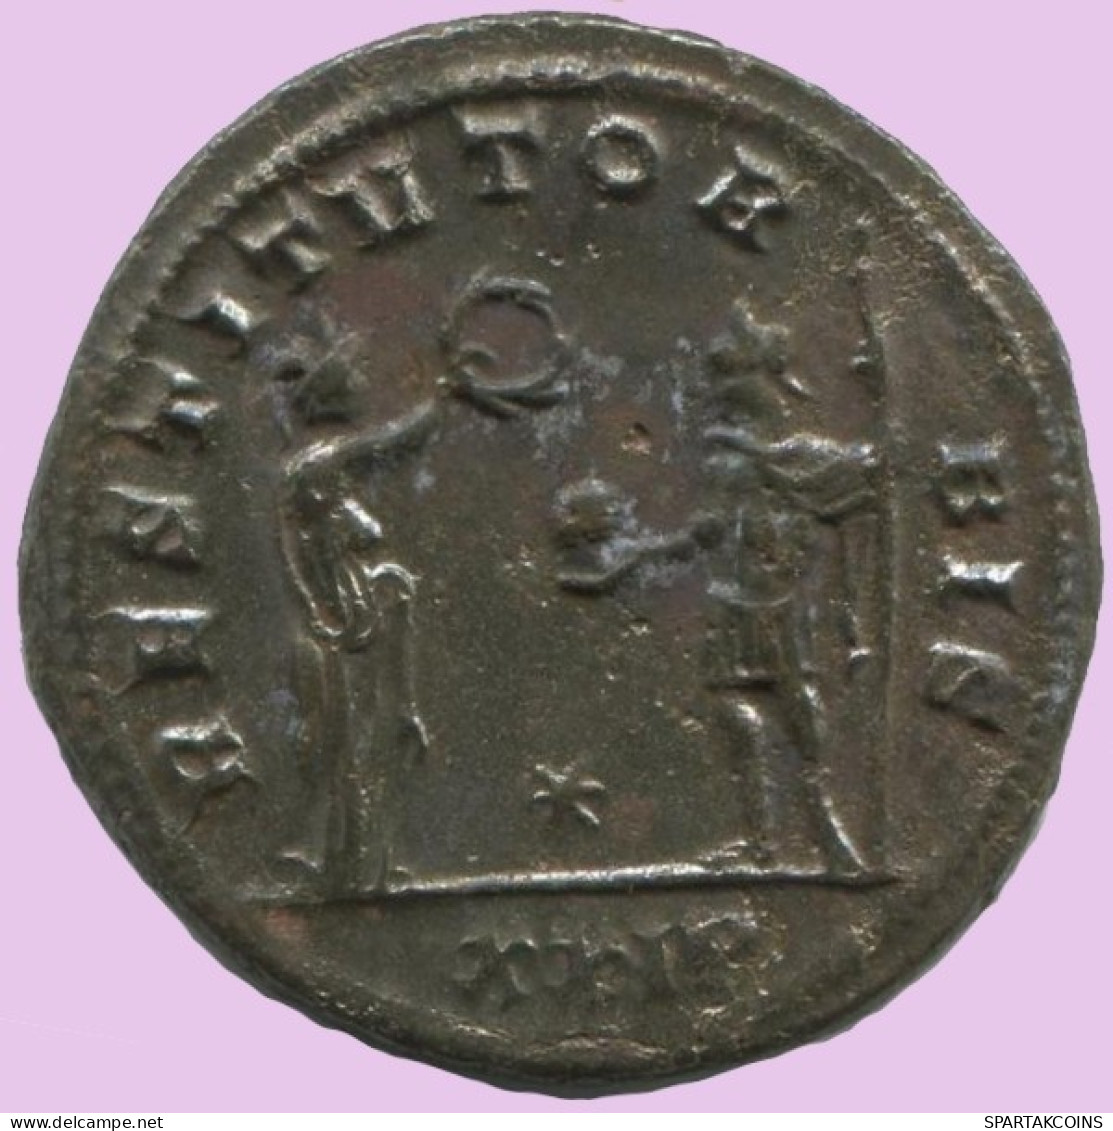 PROBUS ANTONINIANUS Siscia (* / XXIP) AD 278 RESTITVTOR BIS #ANT1885.48.E.A - Der Soldatenkaiser (die Militärkrise) (235 / 284)